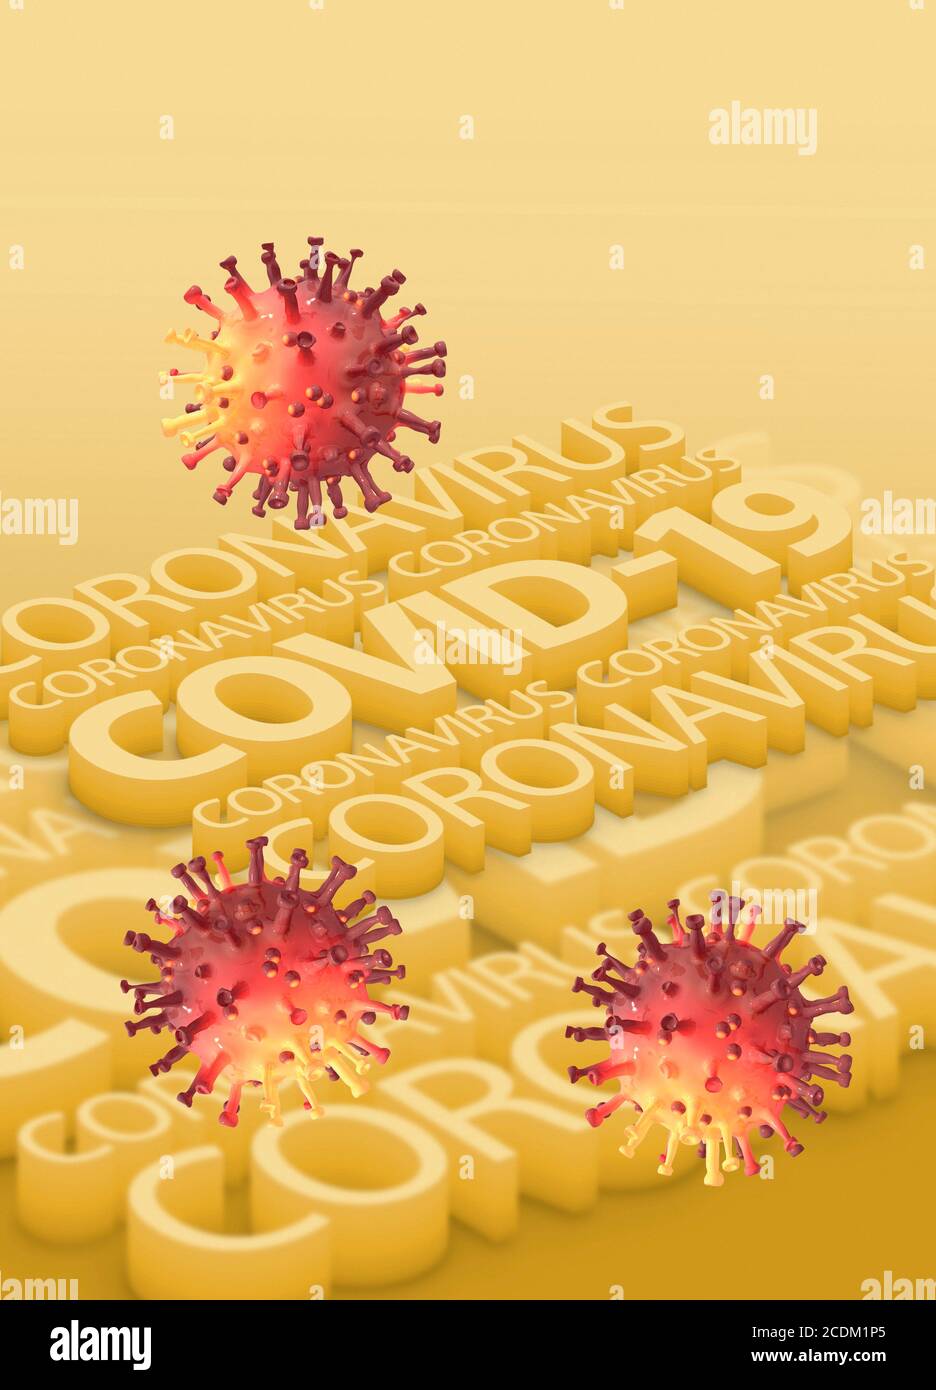 Covid-19 Coronavirus, konzeptuelle Illustration. Das neue Coronavirus SARS-CoV-2 trat im Dezember 2019 in Wuhan, China, auf und verbreitete sich weltweit. Das Virus verursacht eine leichte Atemwegserkrankung (Covid-19), die sich zu einer Lungenentzündung entwickeln und in einigen Fällen tödlich enden kann. Stockfoto